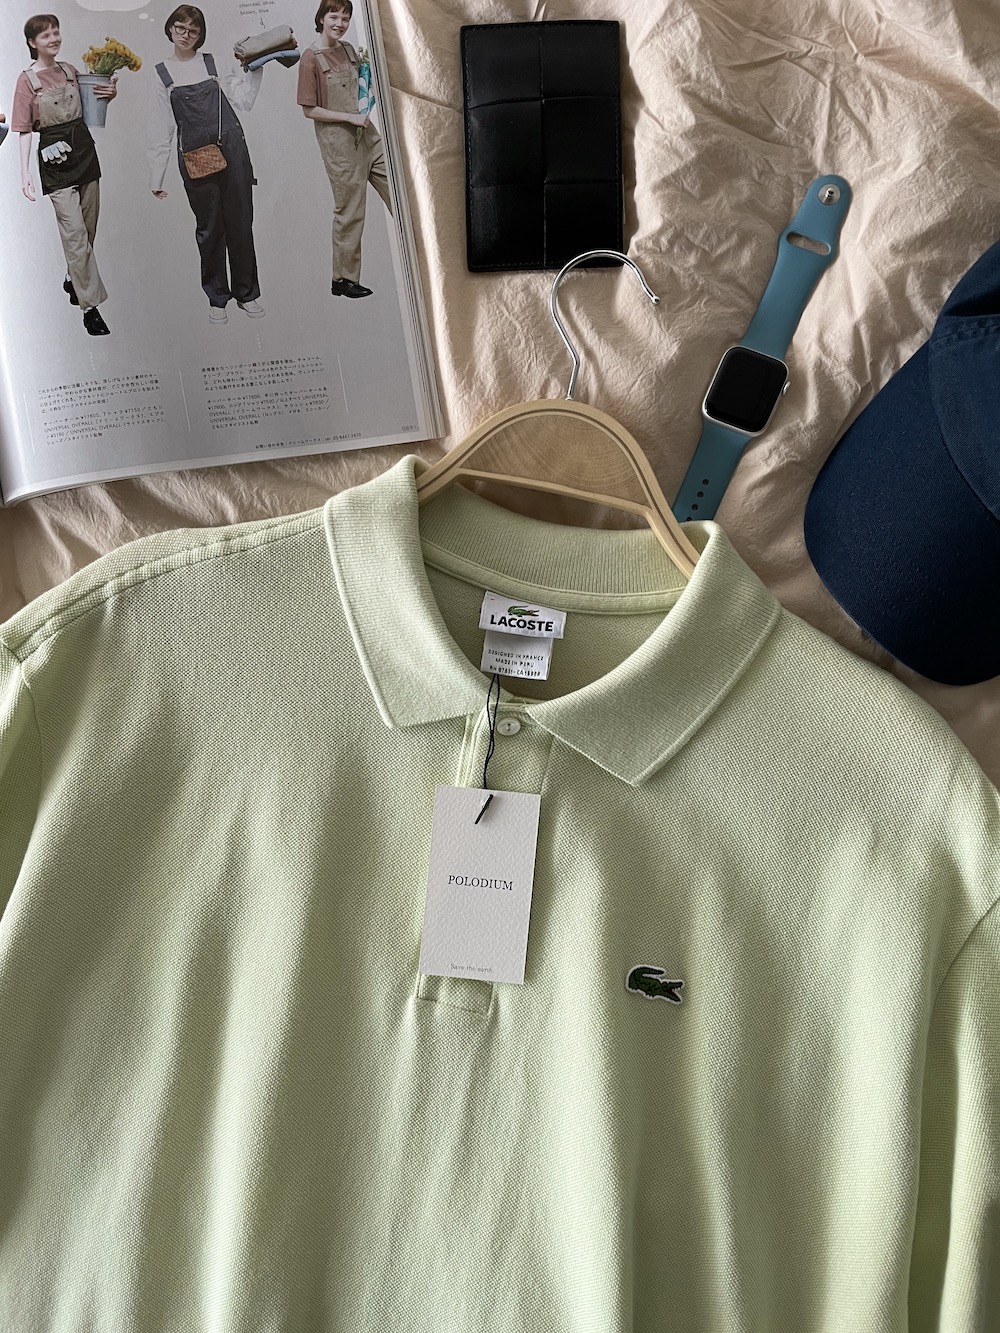 [ 8 ] Lacoste PK T-Shirt (5706)